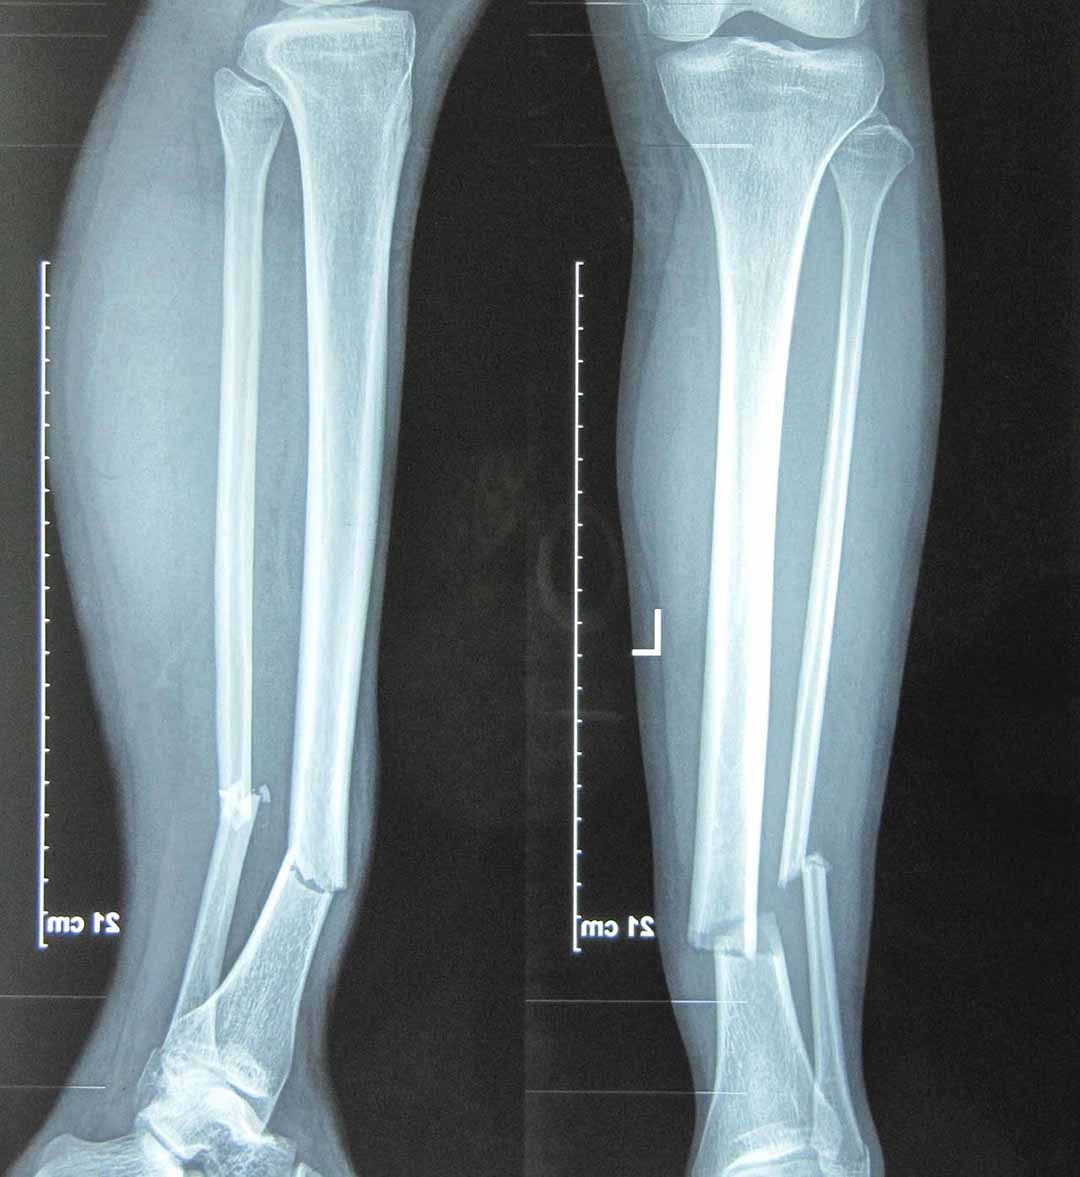 Gãy chân là tình trạng xuất hiện vết nứt hoặc gãy một trong những xương ở chân.